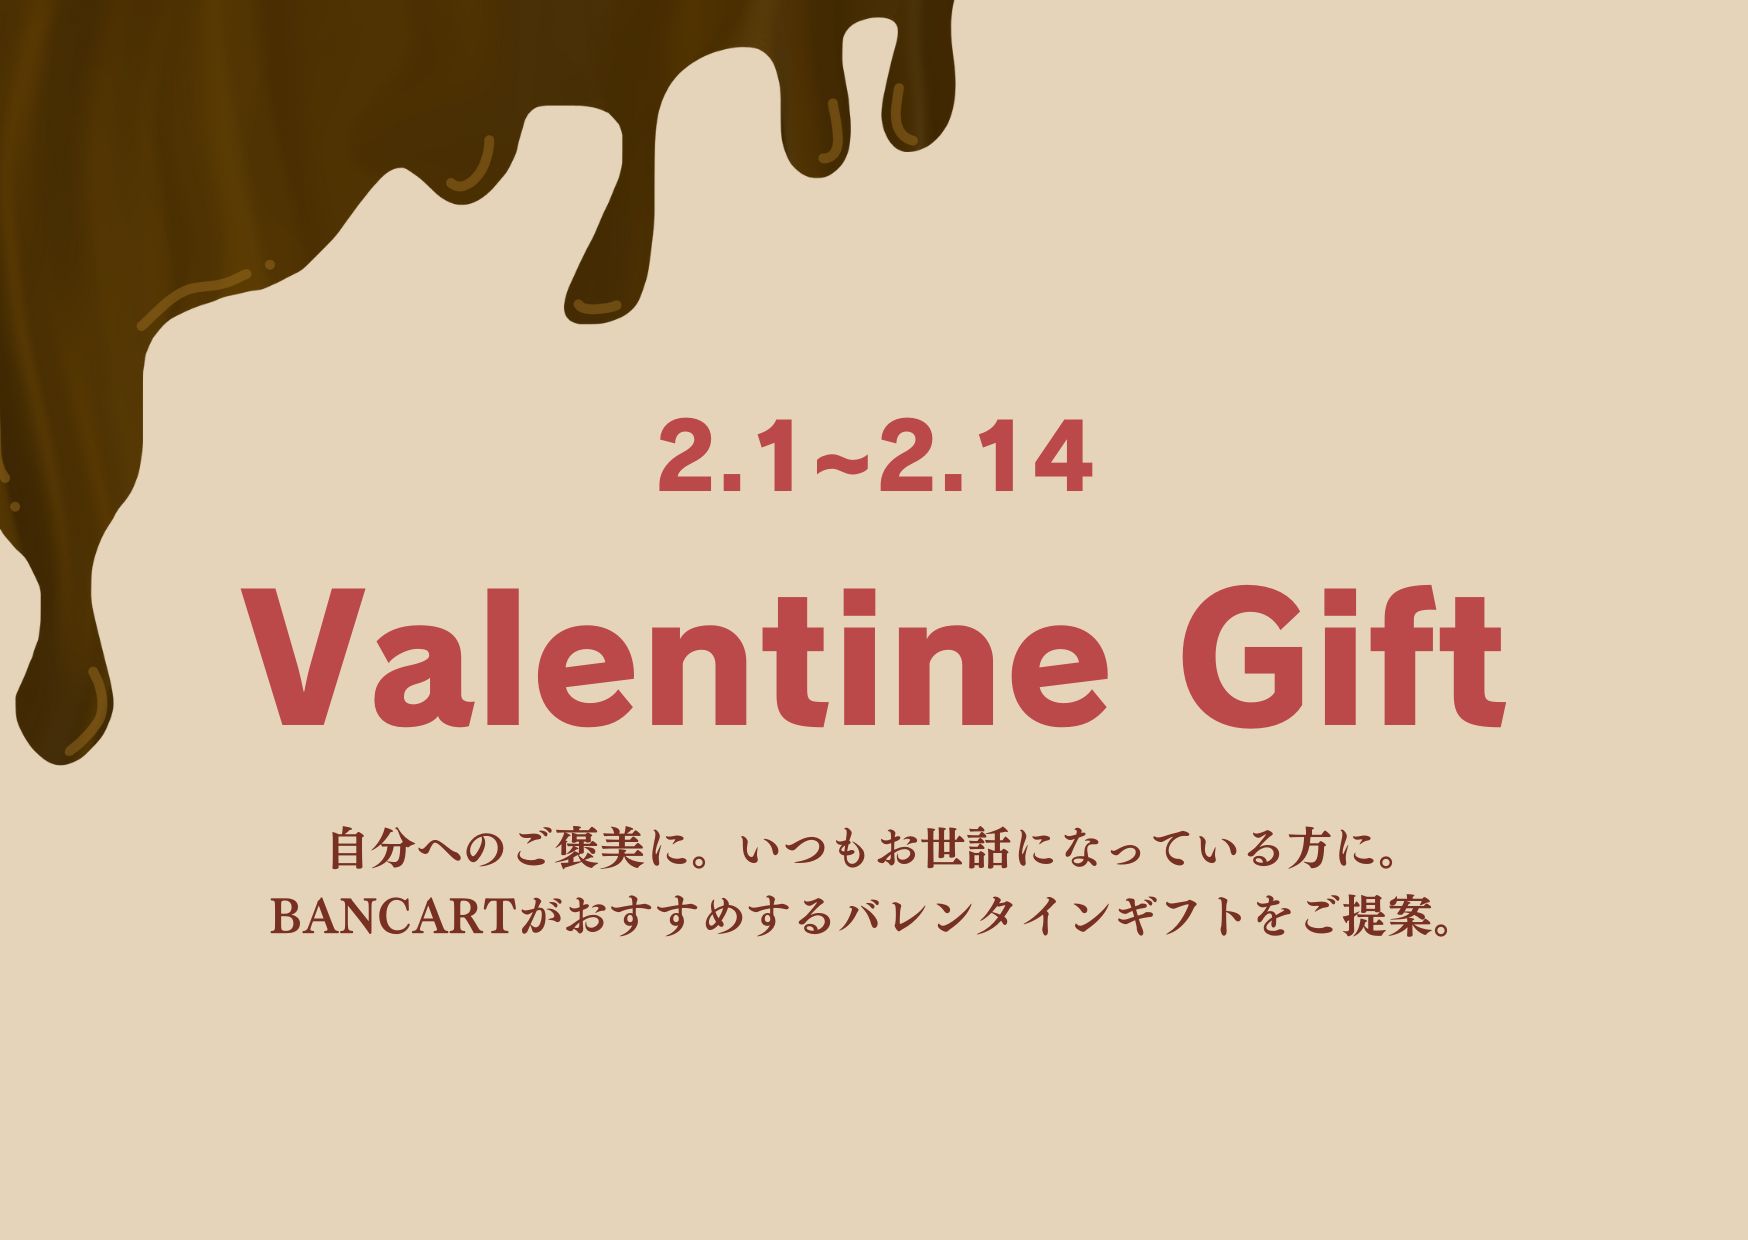 BANCARTがおすすめする「Valentine Gift」